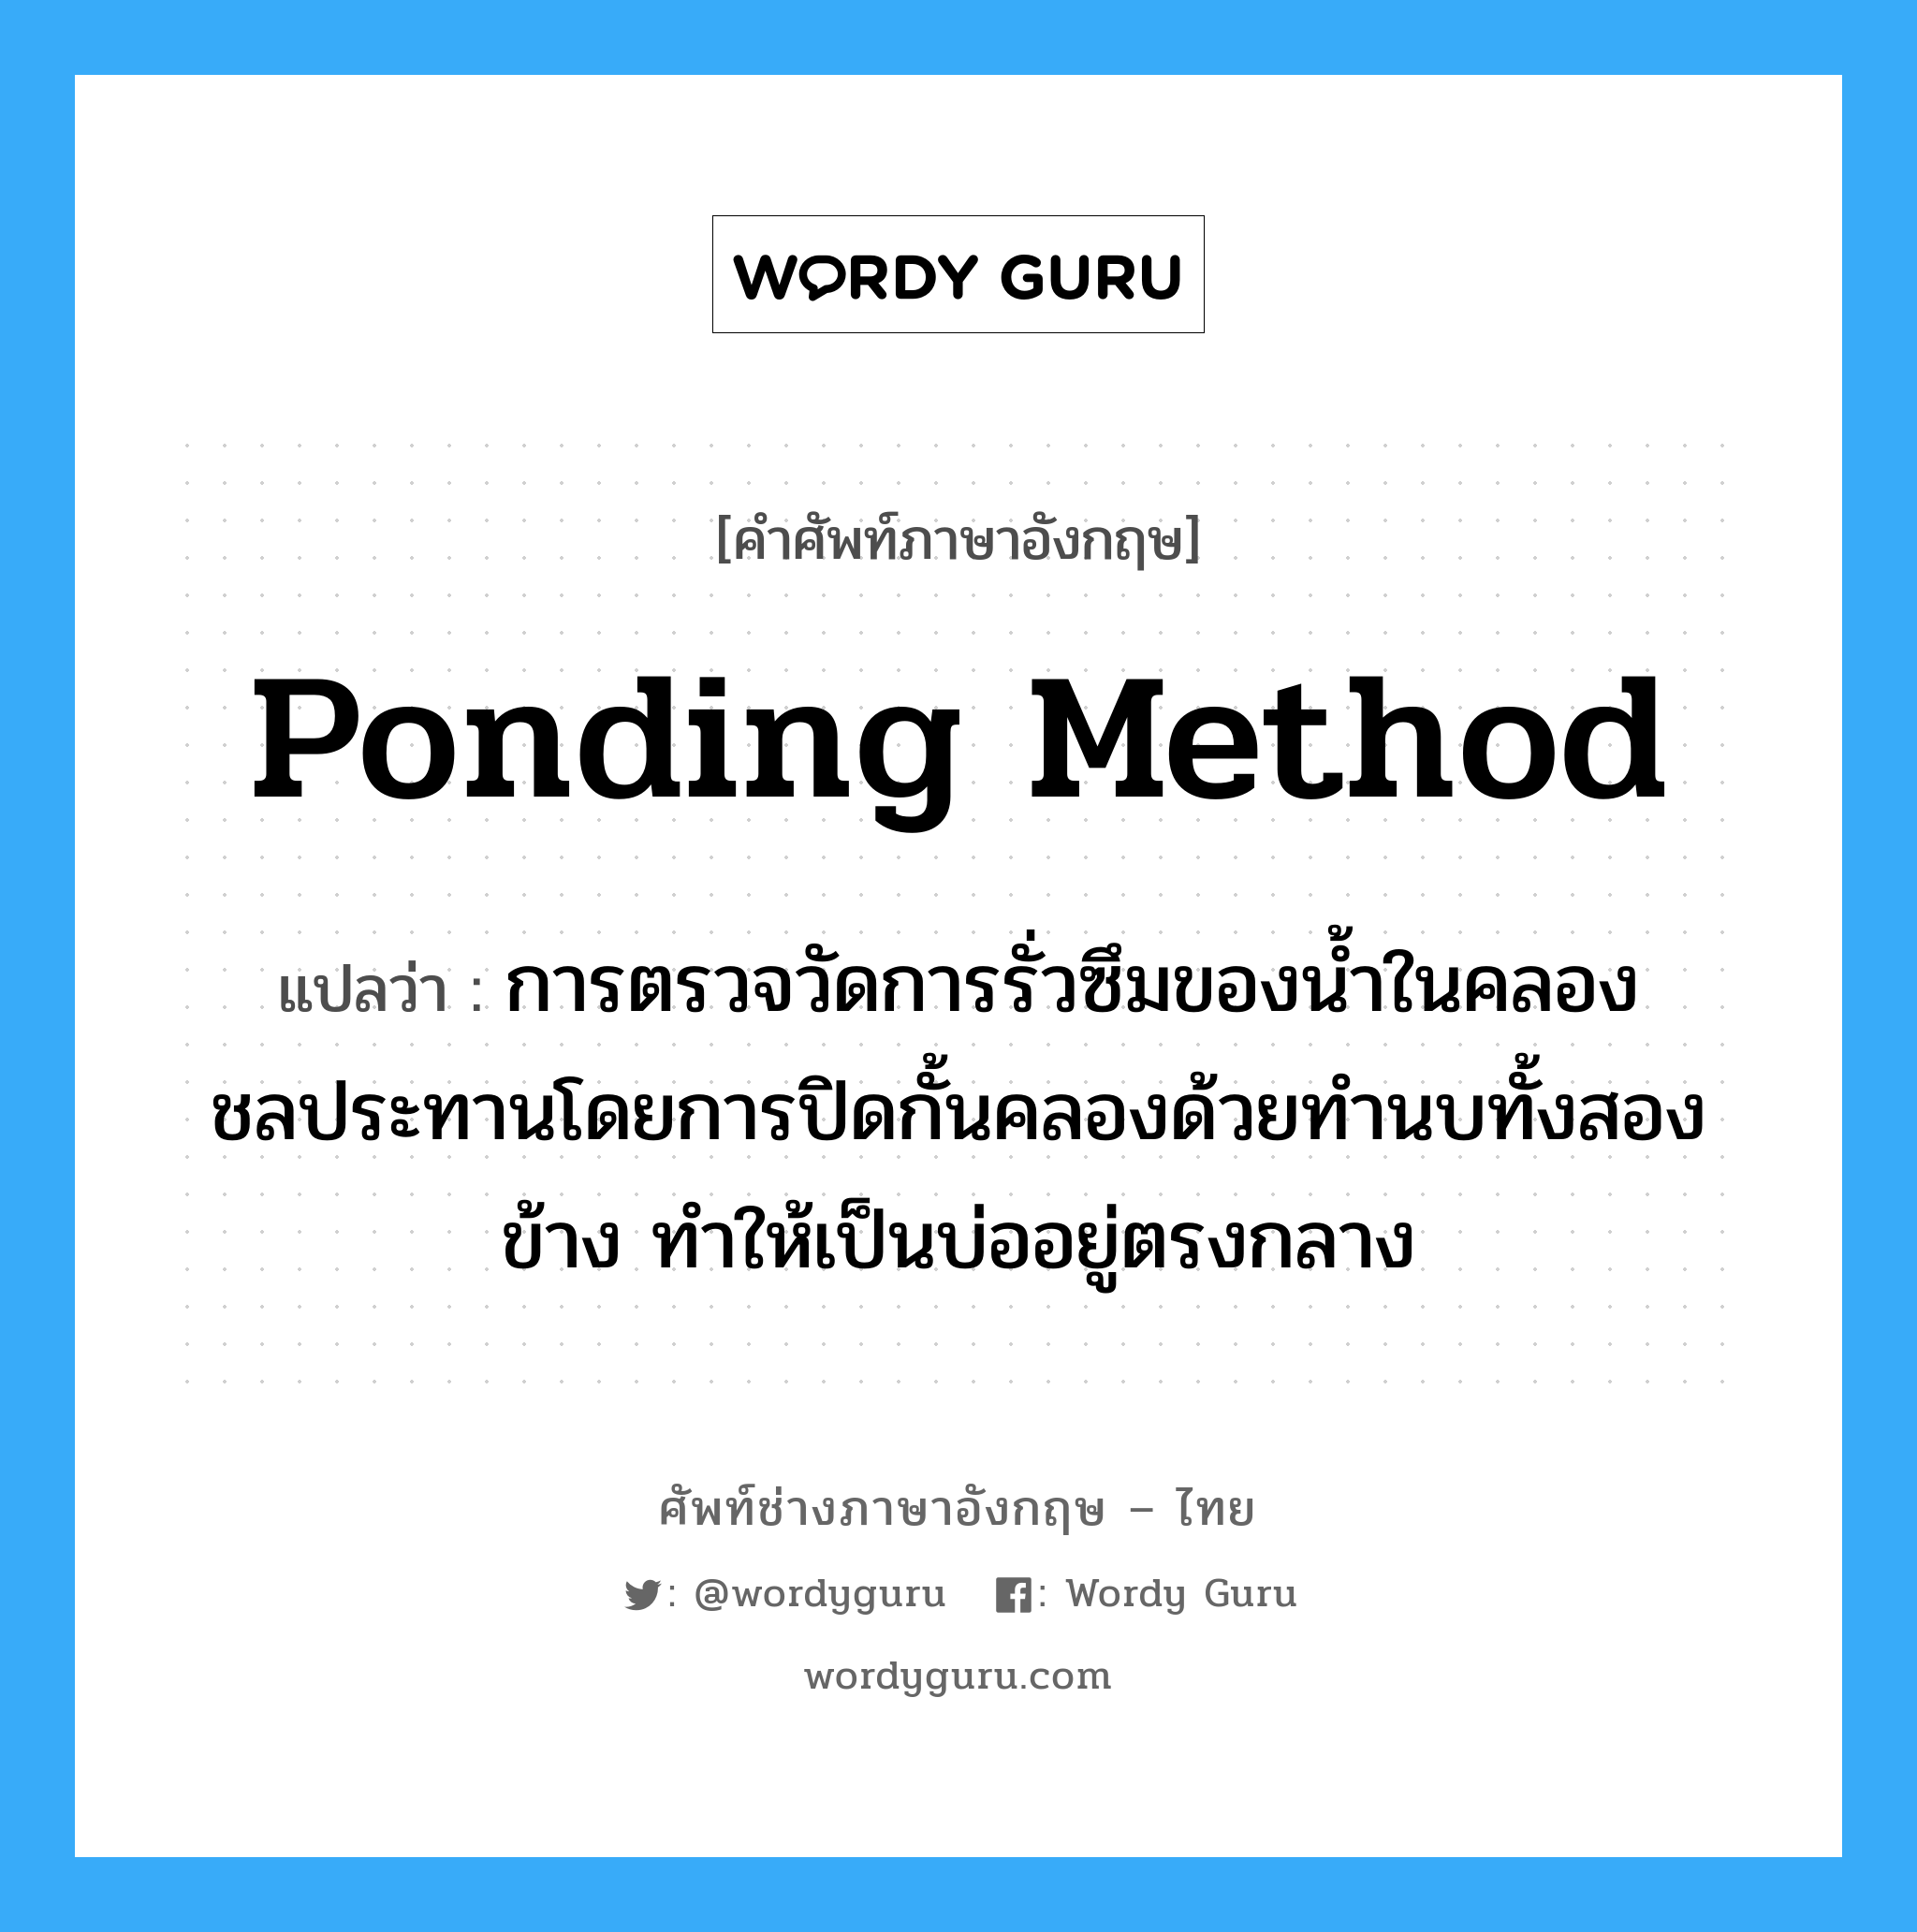 ponding method แปลว่า?, คำศัพท์ช่างภาษาอังกฤษ - ไทย ponding method คำศัพท์ภาษาอังกฤษ ponding method แปลว่า การตรวจวัดการรั่วซึมของน้ำในคลองชลประทานโดยการปิดกั้นคลองด้วยทำนบทั้งสองข้าง ทำให้เป็นบ่ออยู่ตรงกลาง